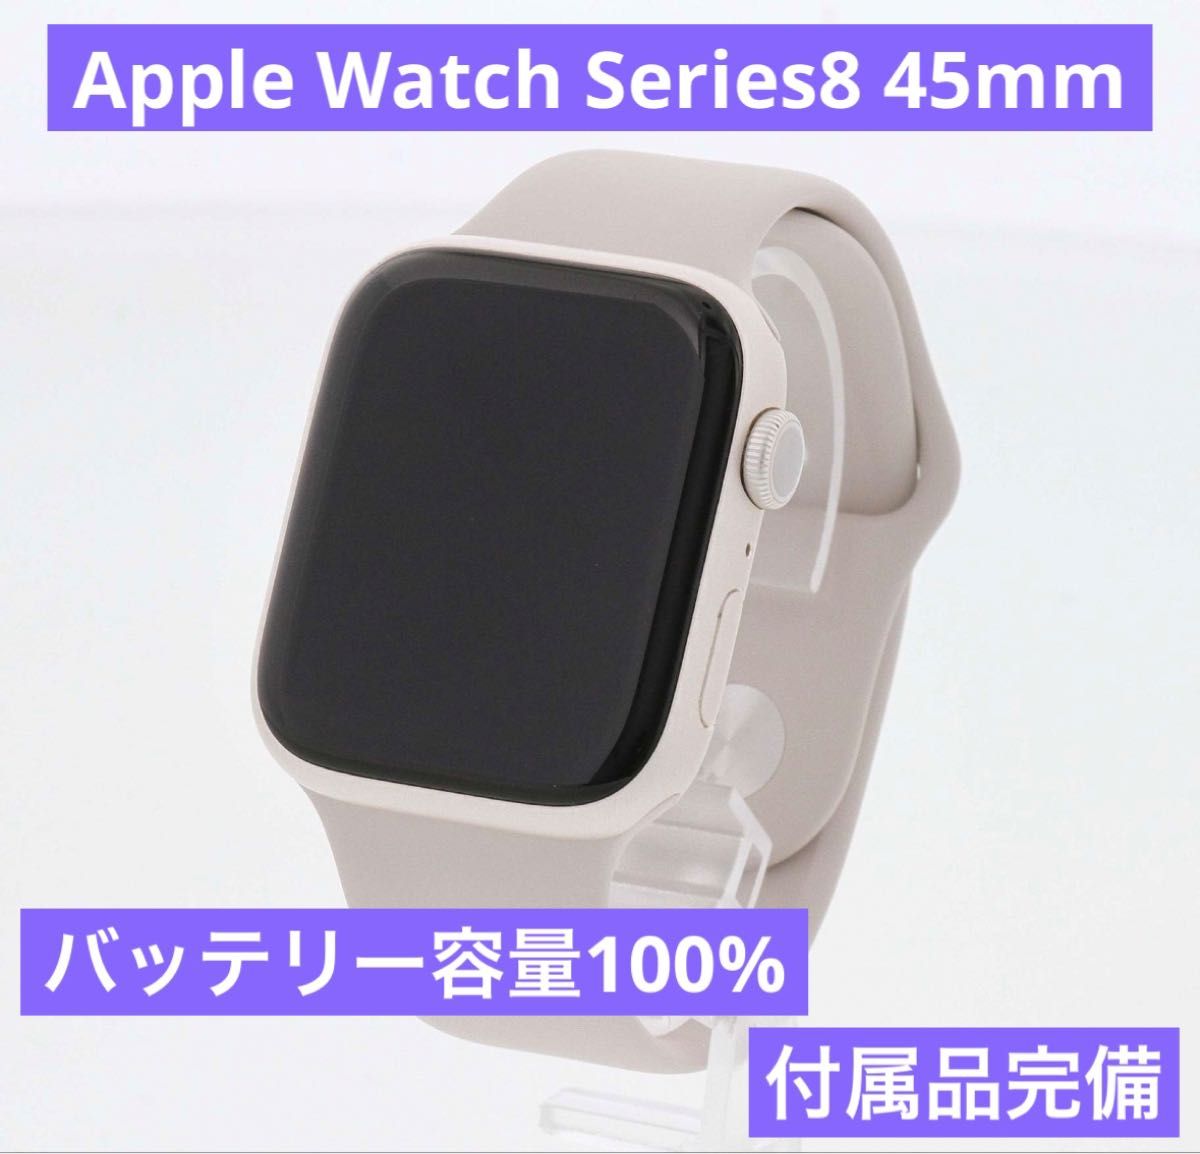 Apple Watch 8 GPSモデル45mm アルミニウム スターライト 付属品完備